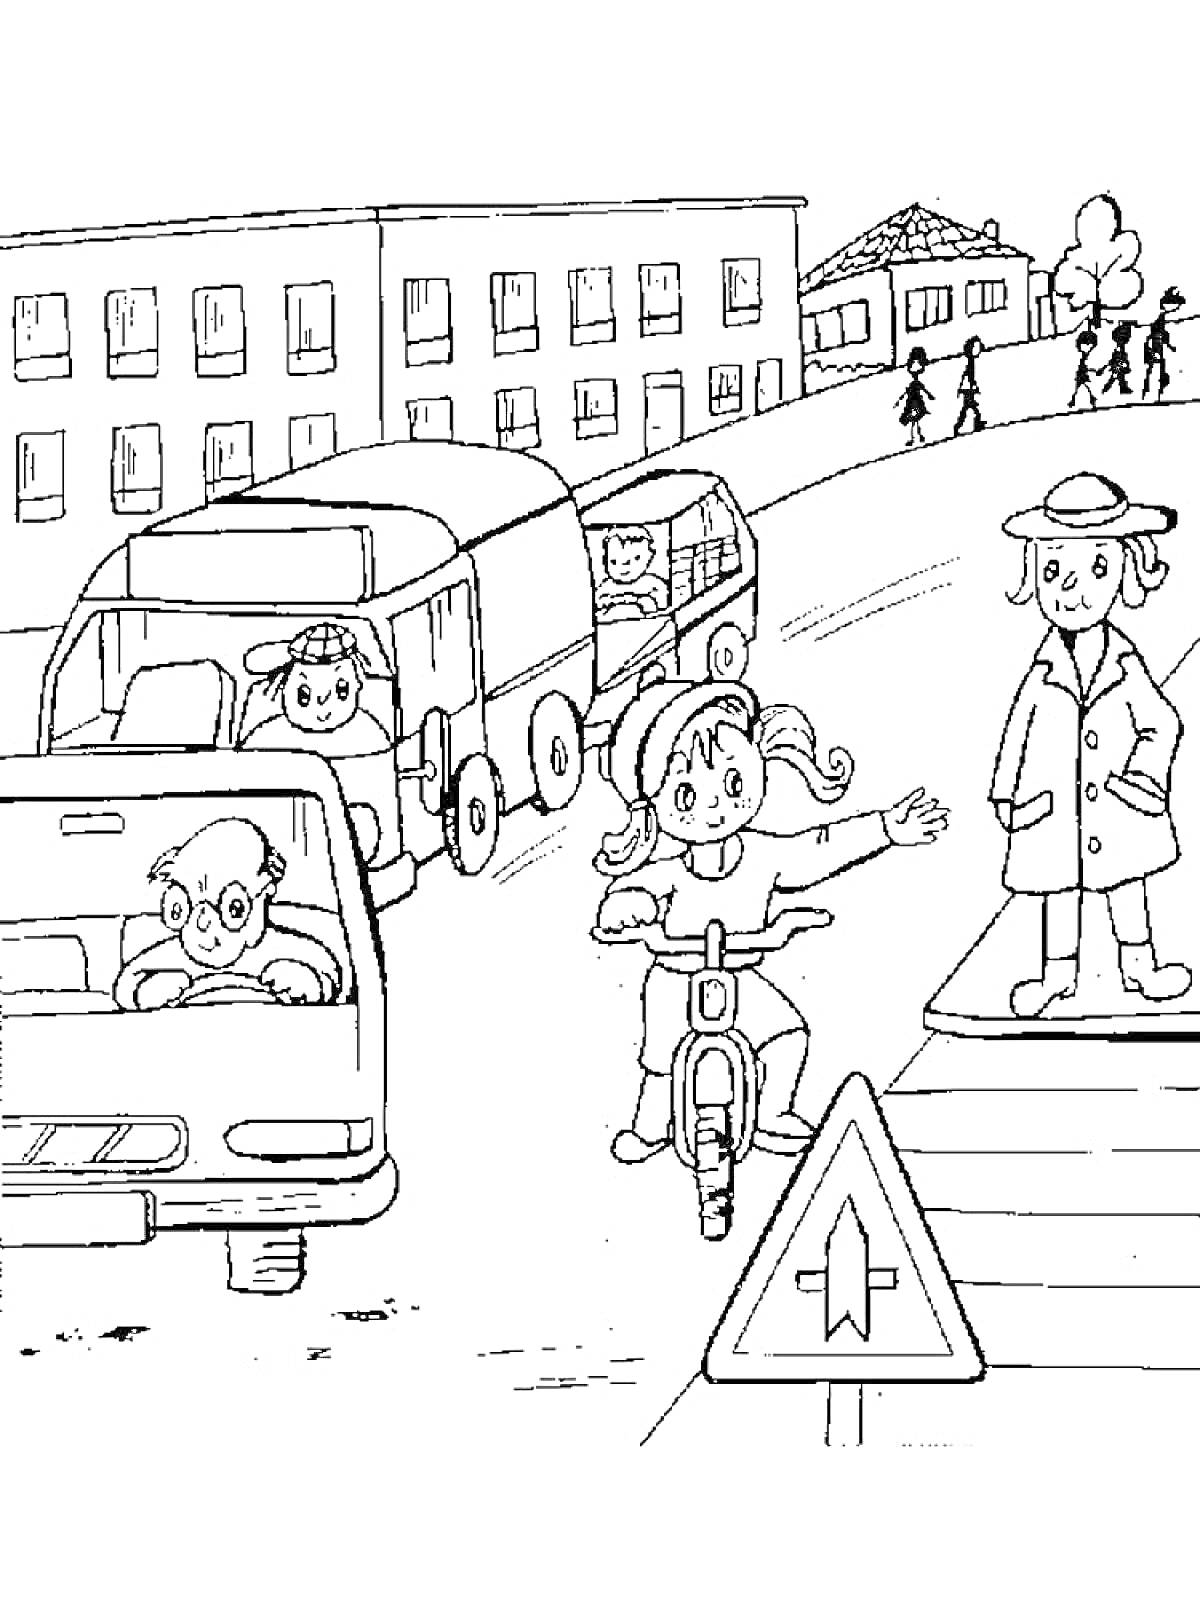 Дети на дороге: девочка на велосипеде, грузовик, легковая машина, пешеход на перекрестке, знак приоритета дороги, жилые дома